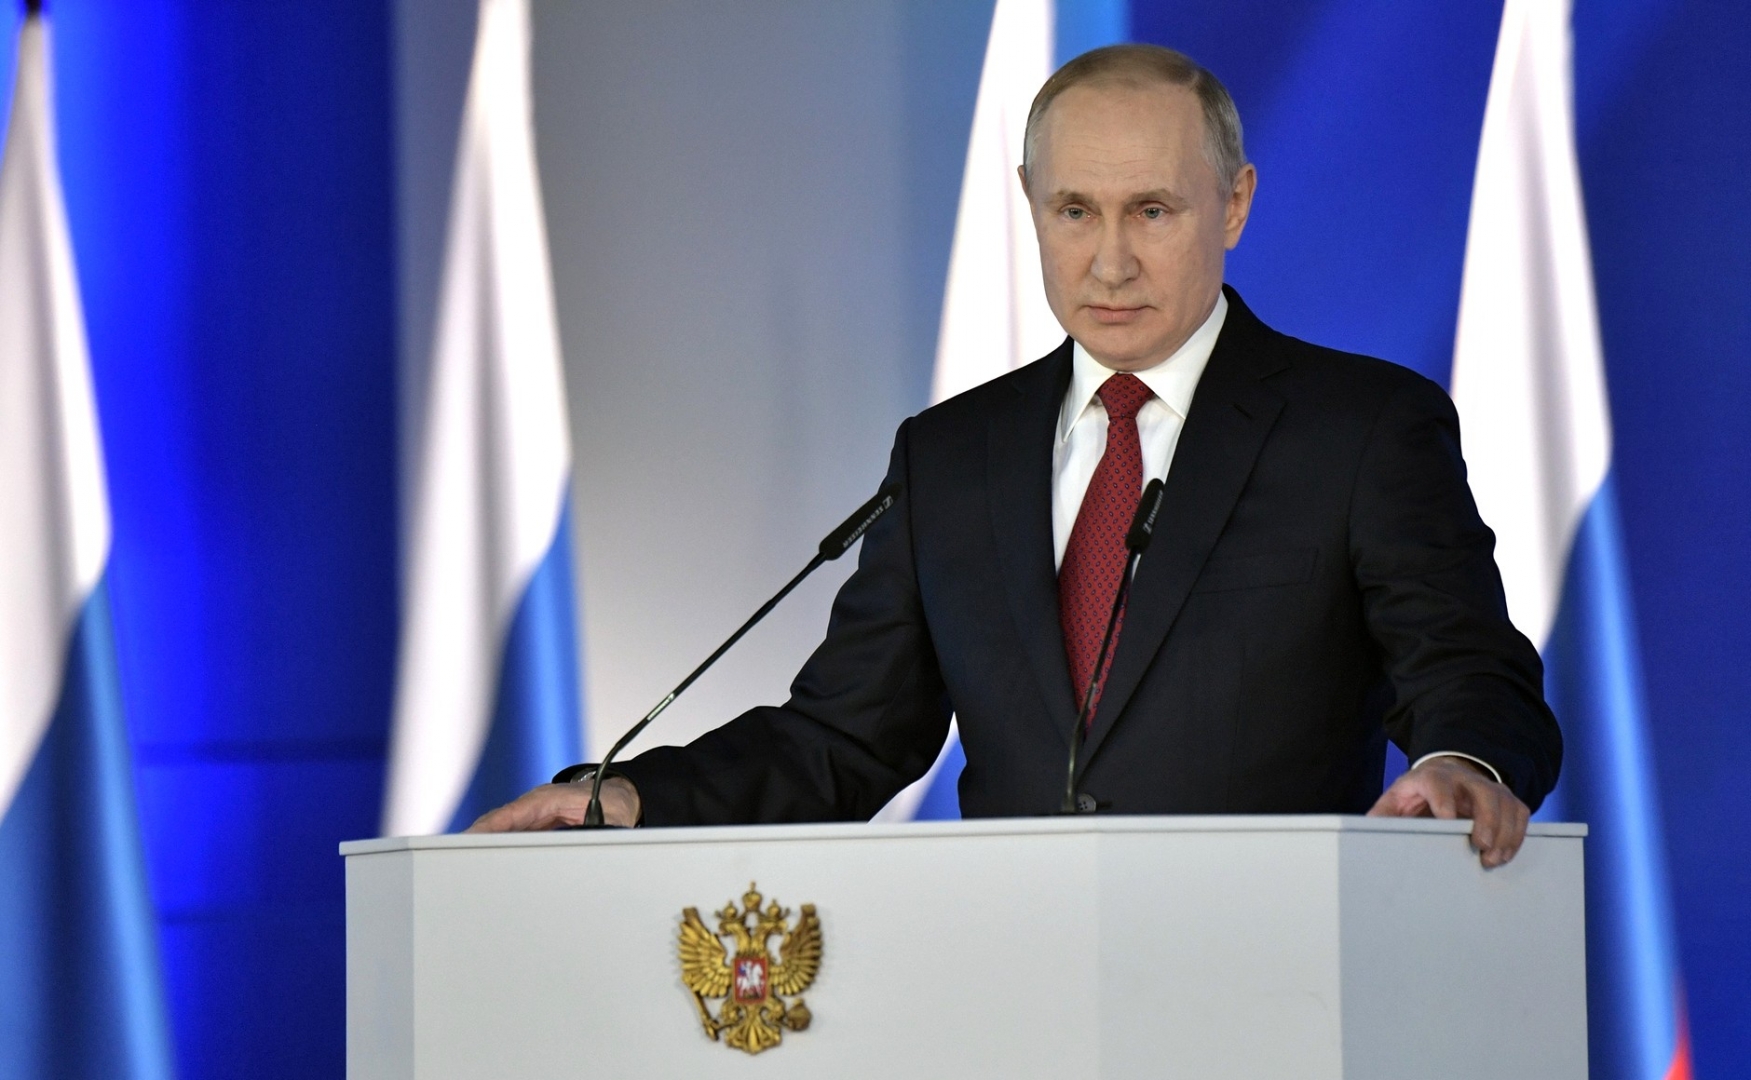 Послание Федеральному собранию: Путин хочет придать особую роль Госсовету и править вечно - политолог Белковский